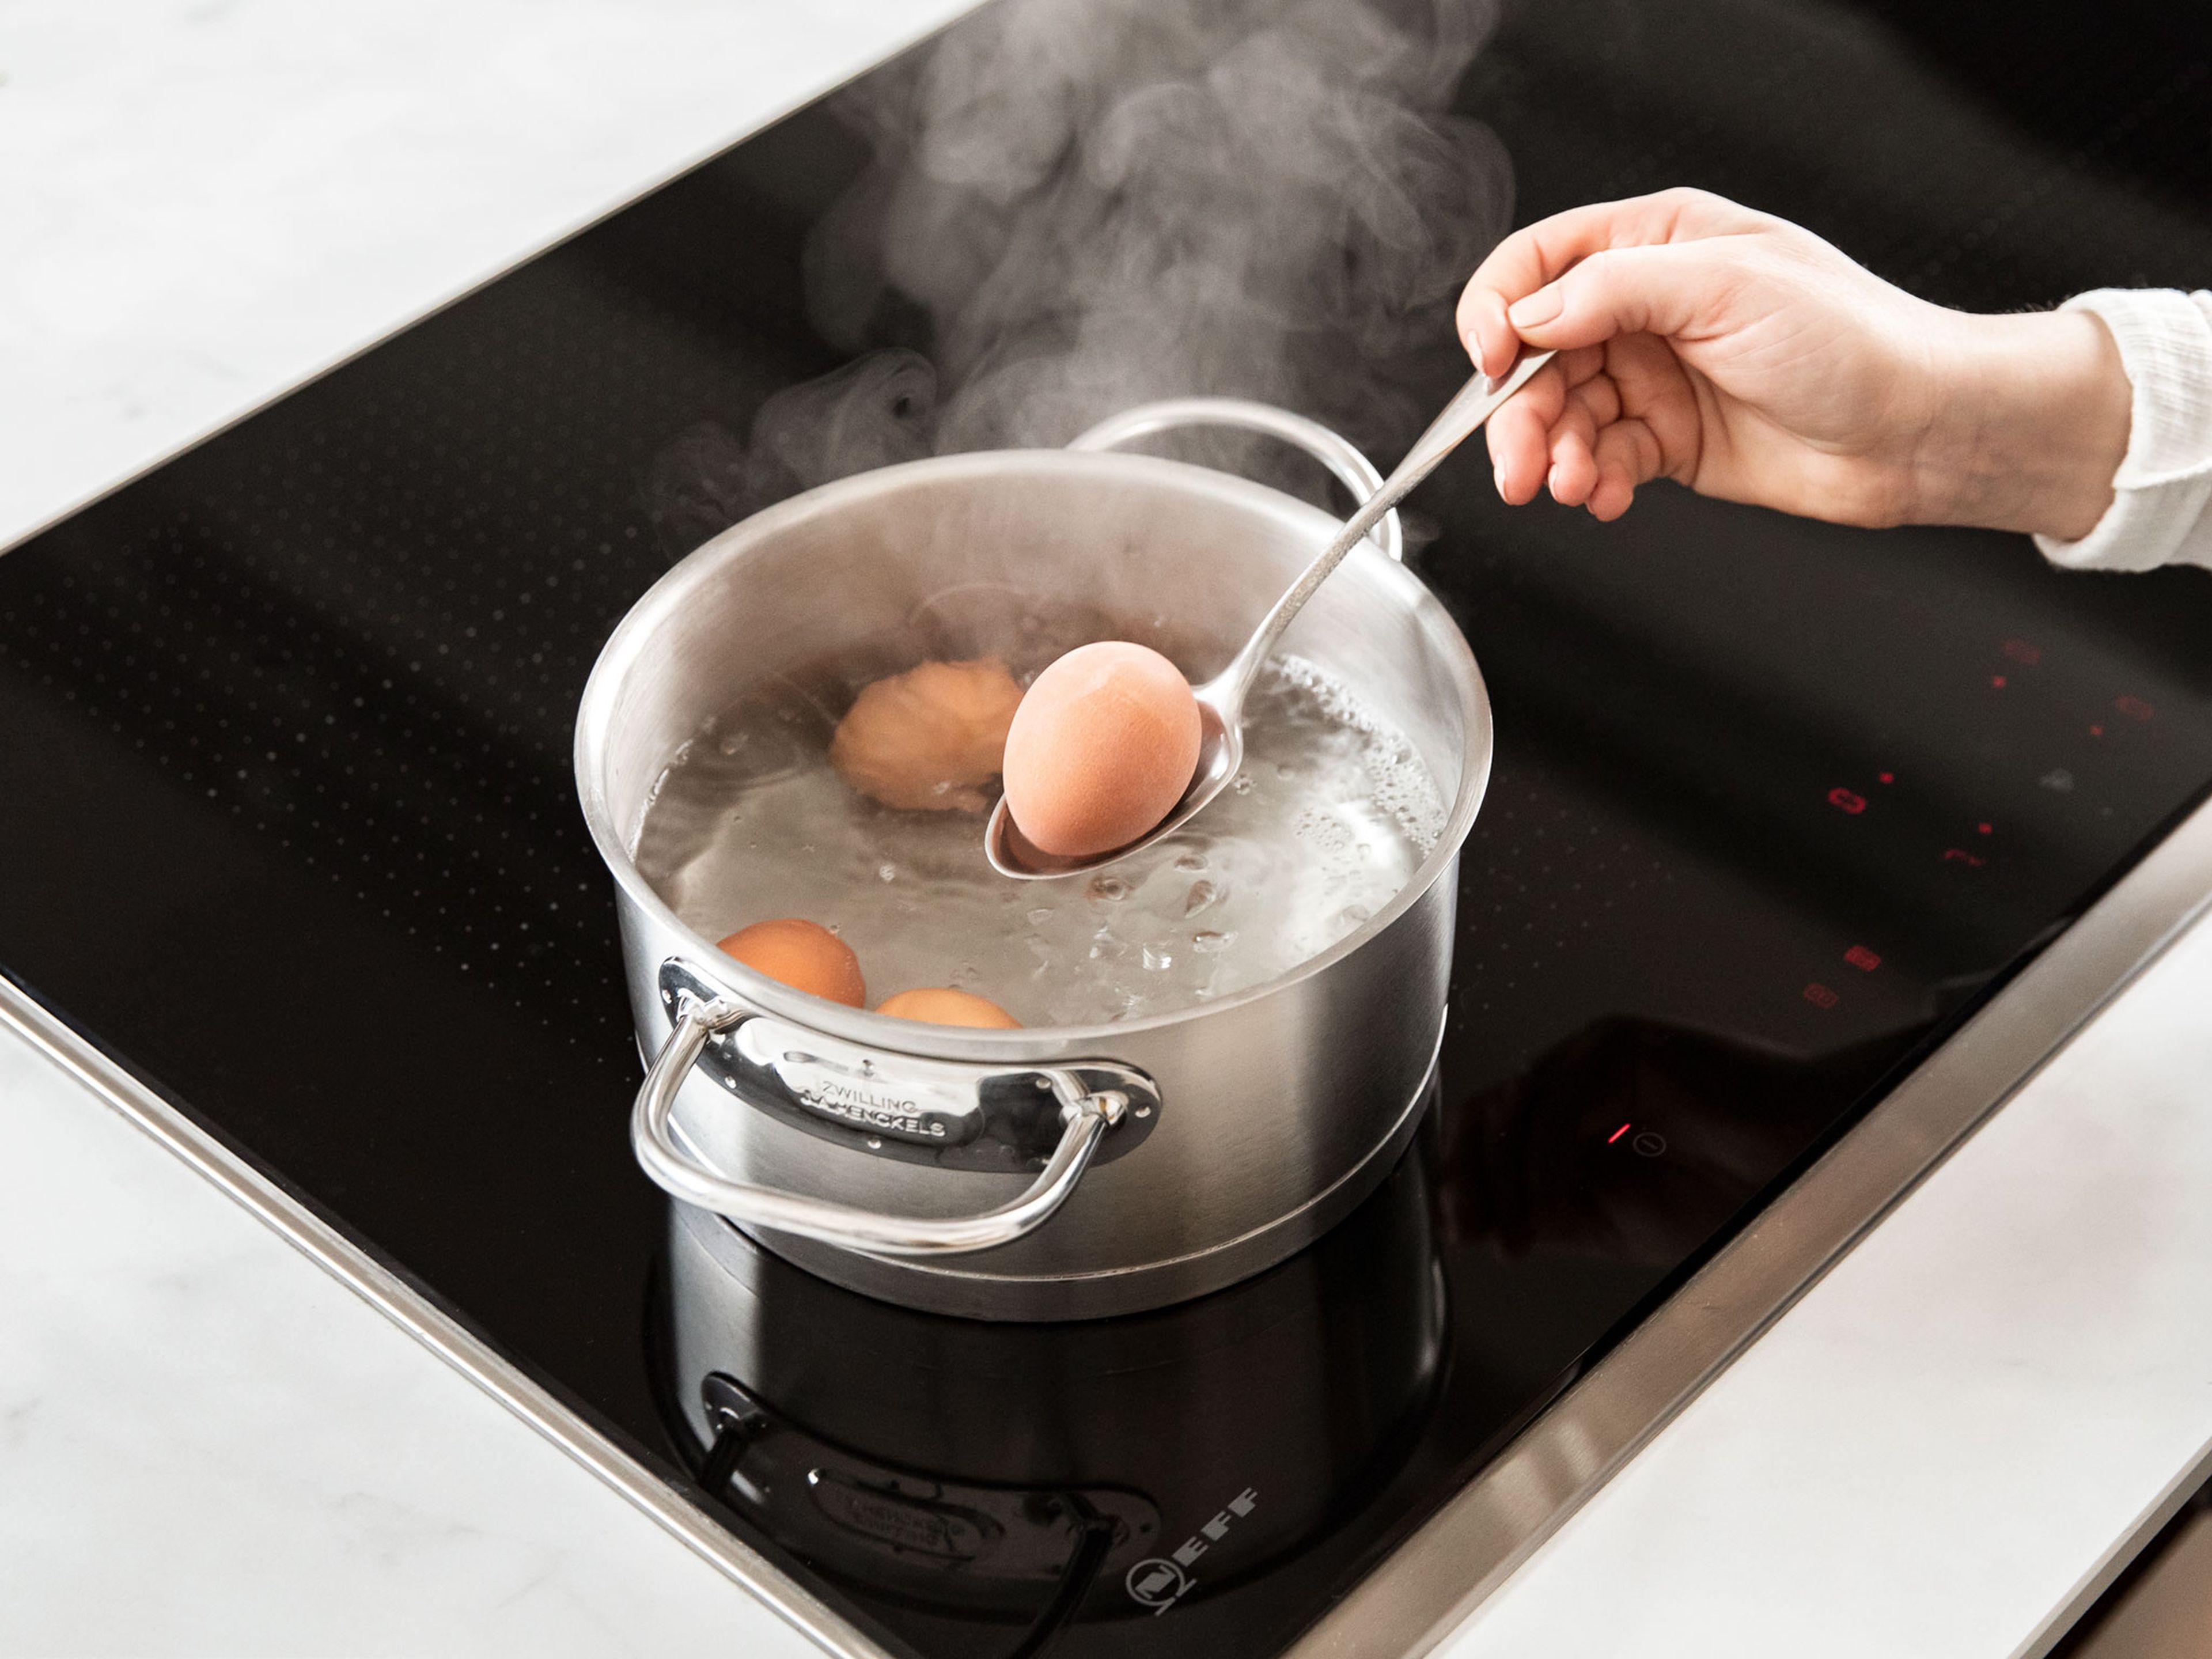 In der Zwischenzeit Wasser in einem Topf zum Kochen bringen. Die Eier vorsichtig in das Wasser geben. Den Deckel daraufsetzen und die Eier bei reduzierter Hitze für ca. 9 Min. kochen, bis sie hartgekocht sind. Nach der Kochzeit die Eier in einer Schüssel mit eiskaltem Wasser abschrecken.